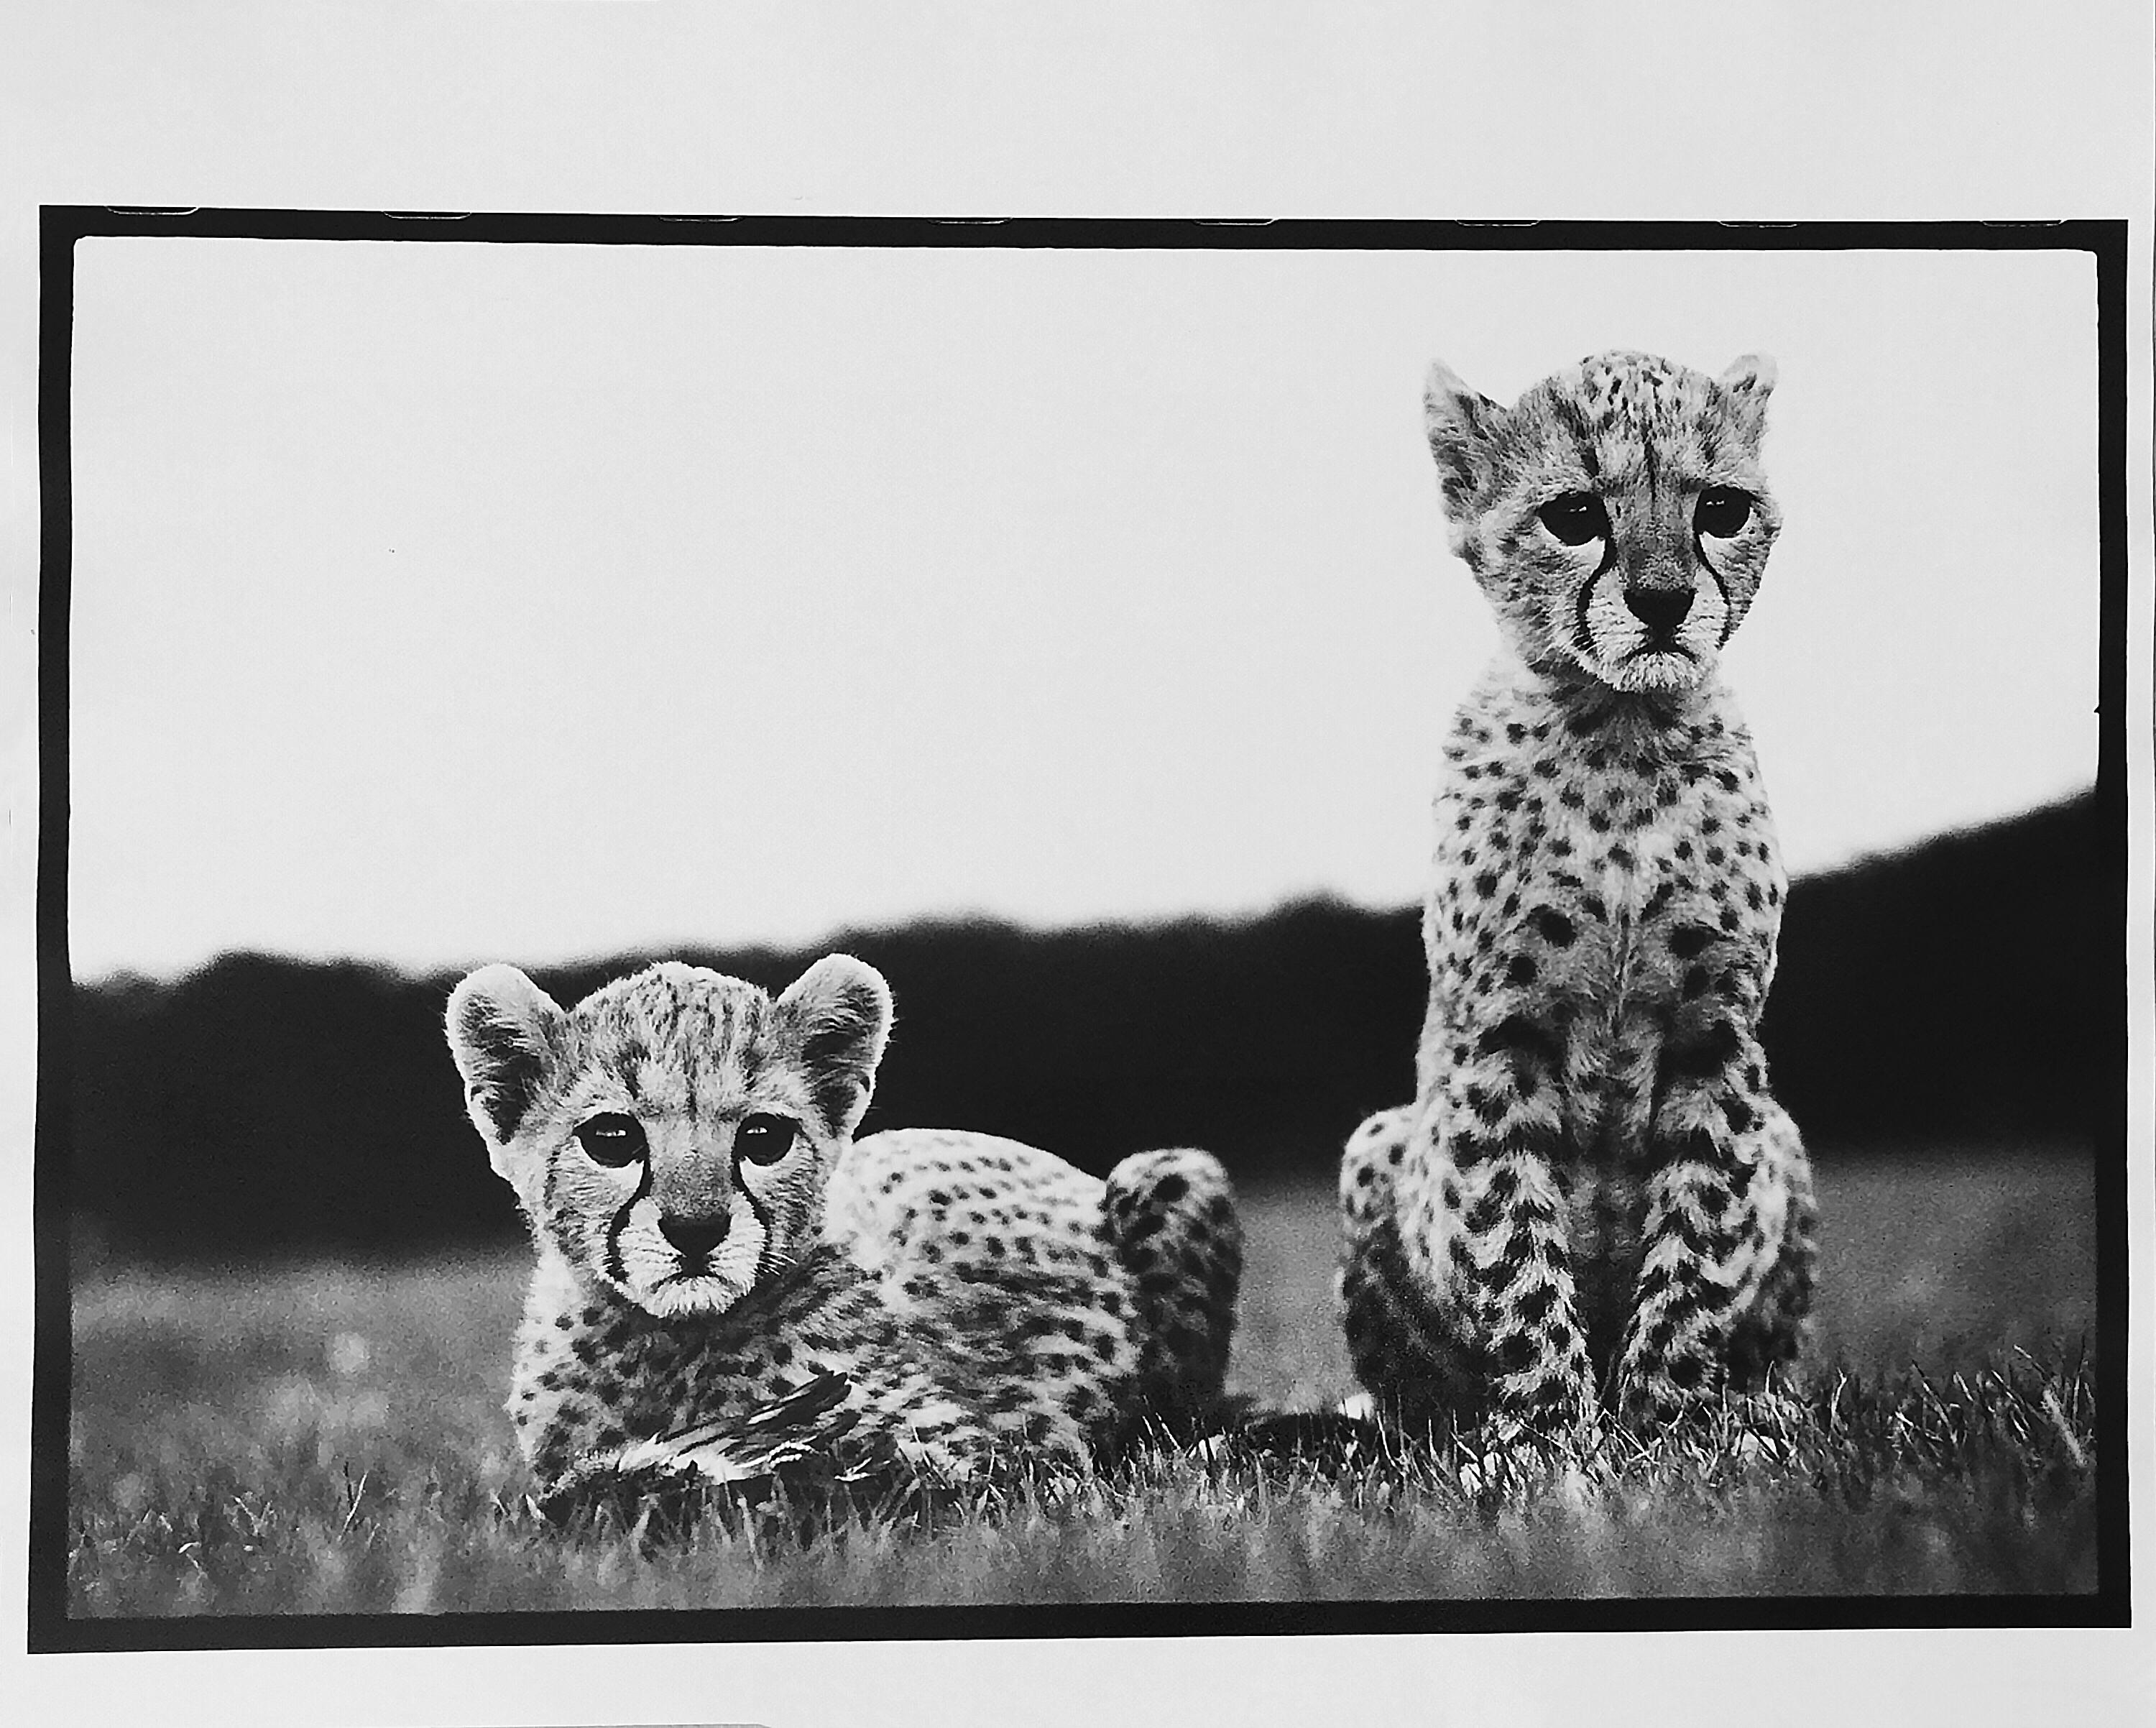 Peter Beard Black and White Photograph - Cheetah Cubs at Mweiga nr Nyeri, Kenya, 1968